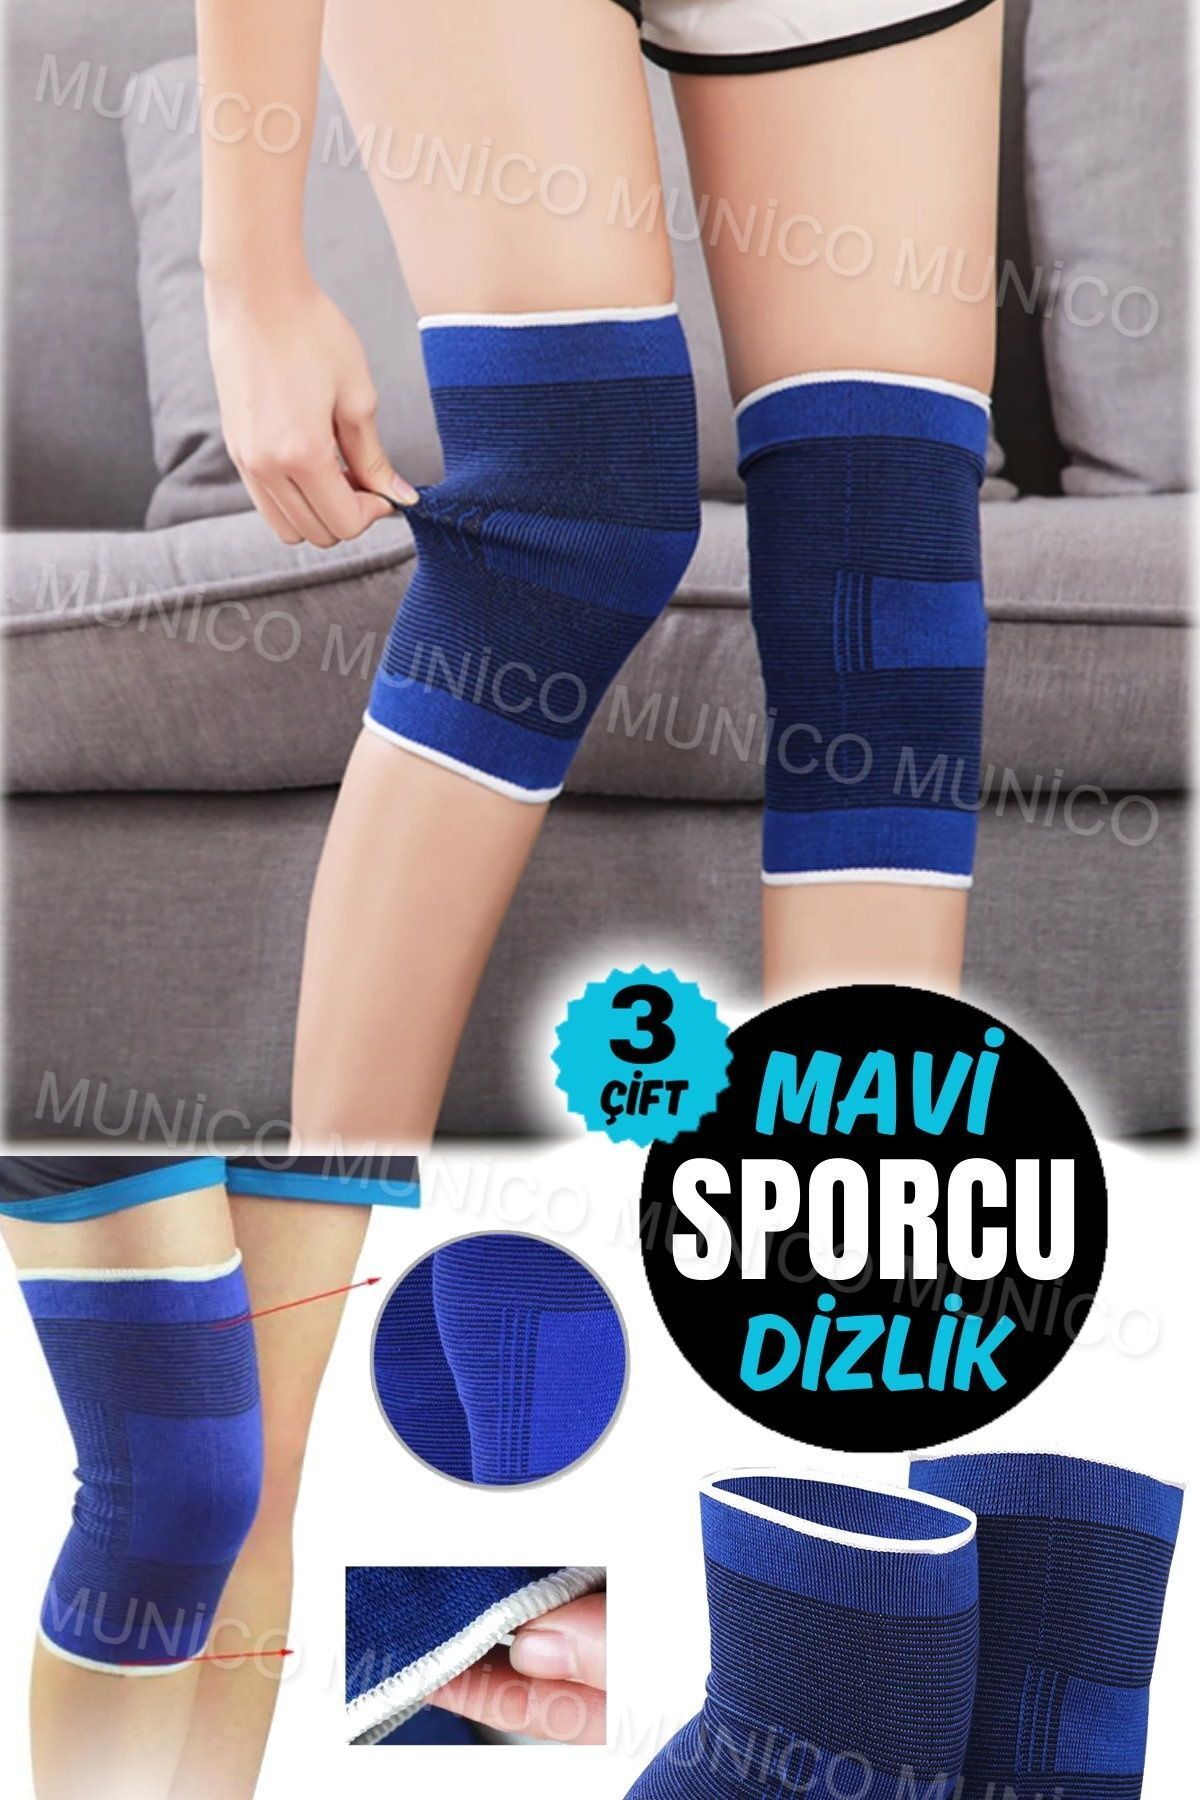 Munico 3 Çift Spor Yaralanmaları için Diz Menisküs Koruma Bandaj Renkli Nefes Alabilen Spor Dizlik Bandajı